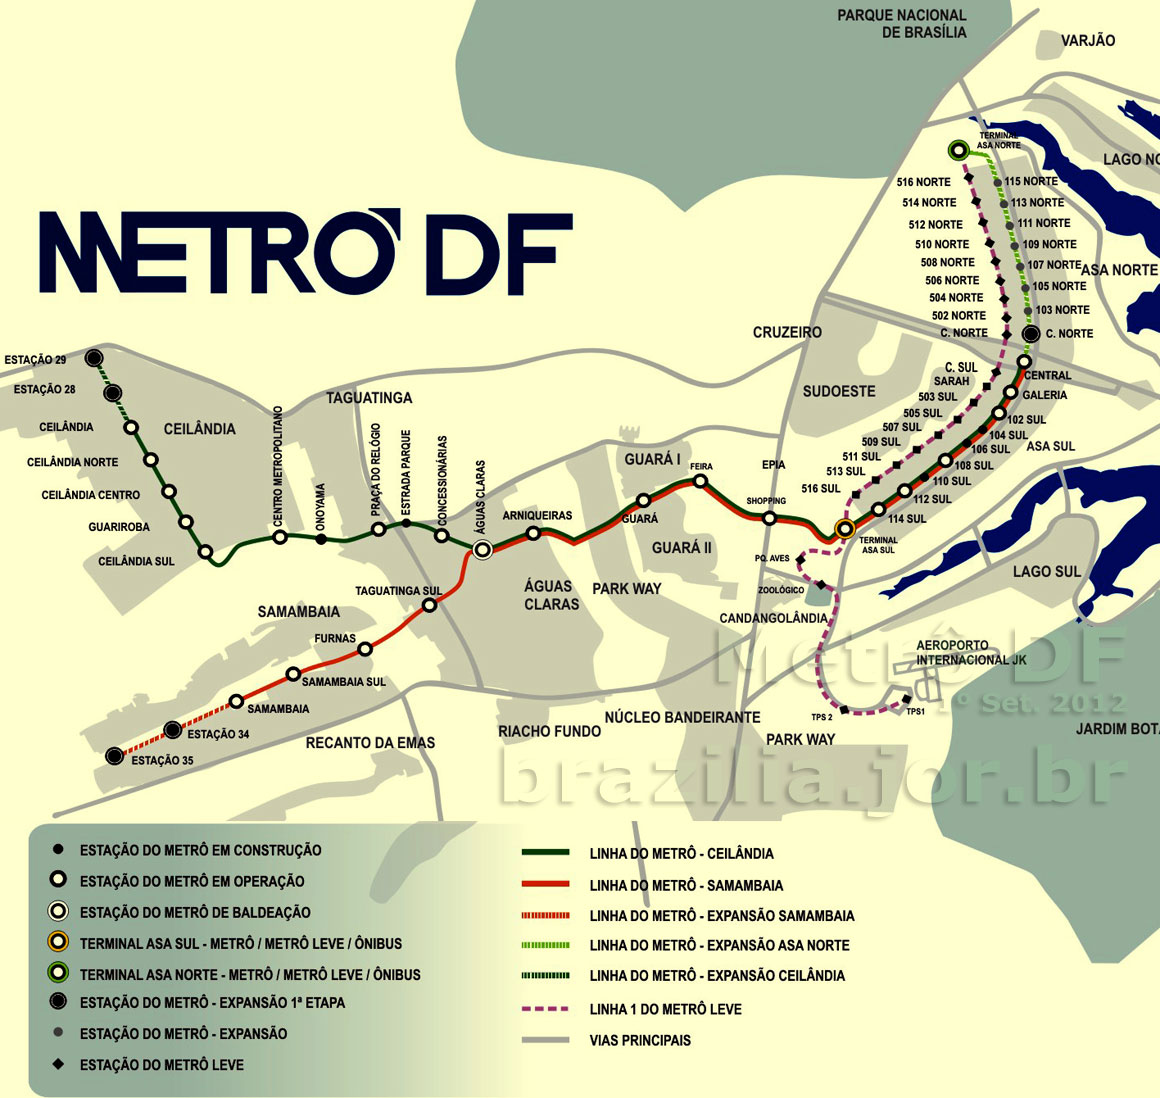 Mapa dos trilhos e estações do Metrô de Brasília, expansão planejada e percursos previstos para o VLT - Veículo Leve sobre Trilhos